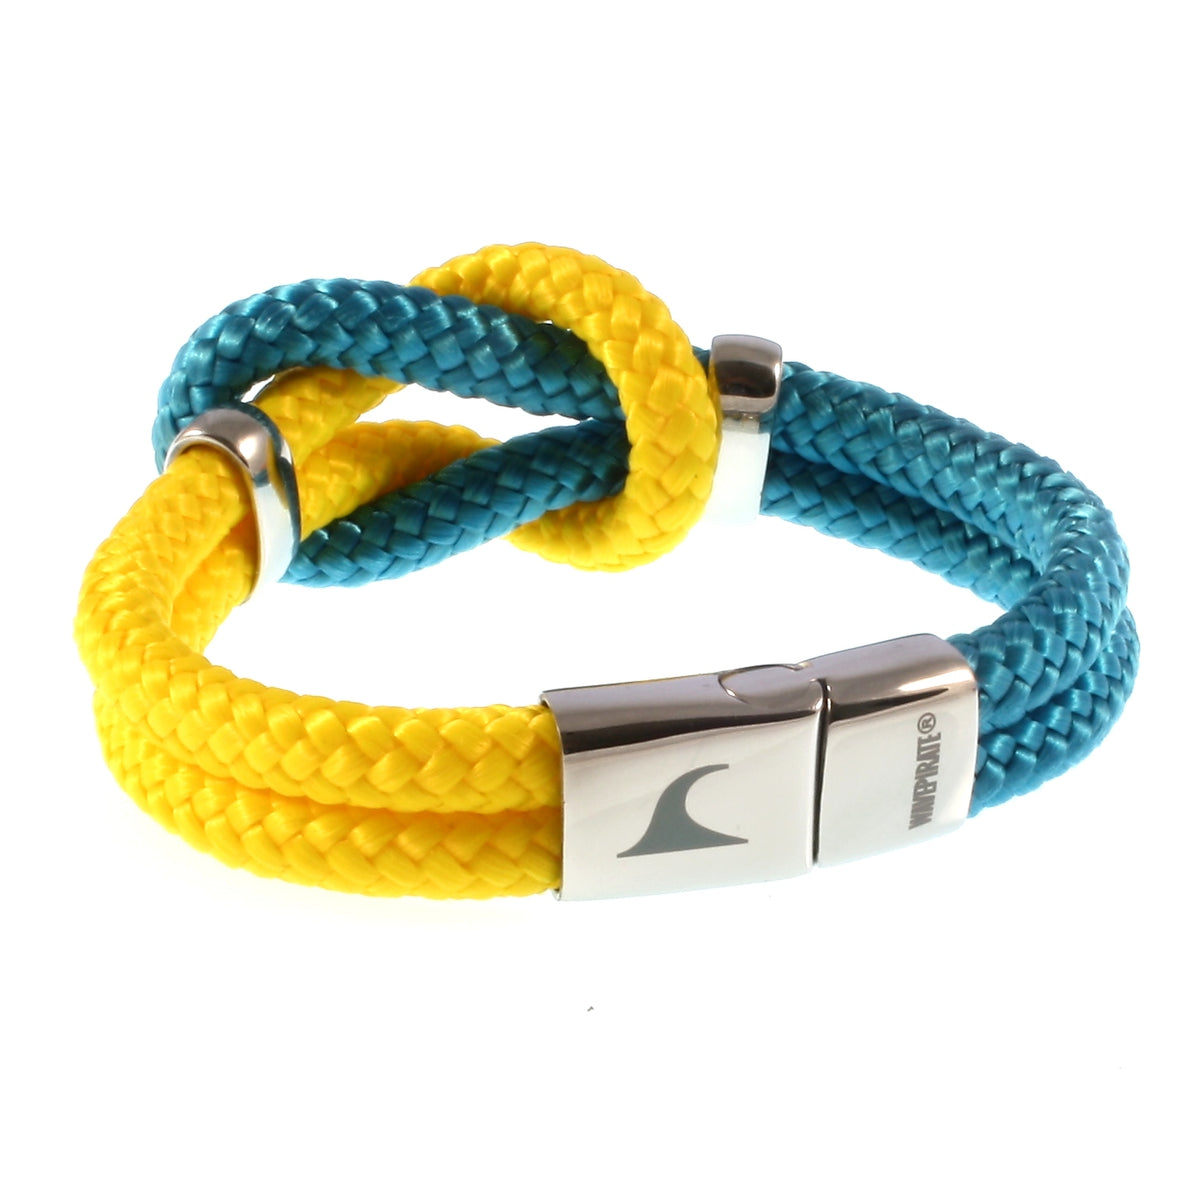 Damen-Segeltau-armband-pure-blau-gelb-silber-geflochten-Edelstahlverschluss-hinten-wavepirate-shop-st